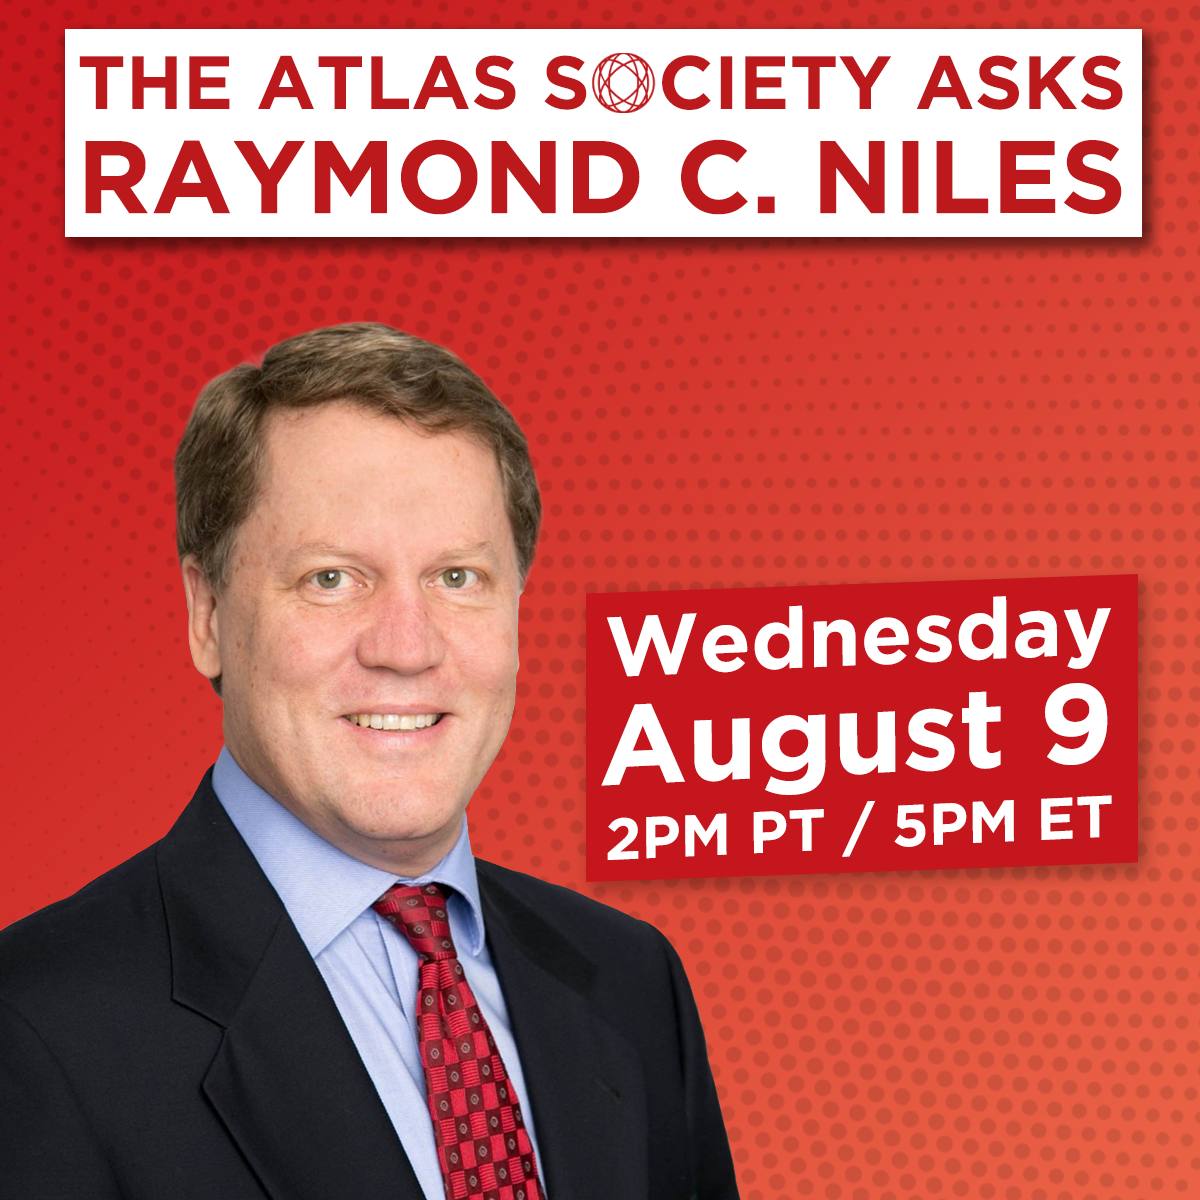 The Atlas Society Asks Raymond C. Niles